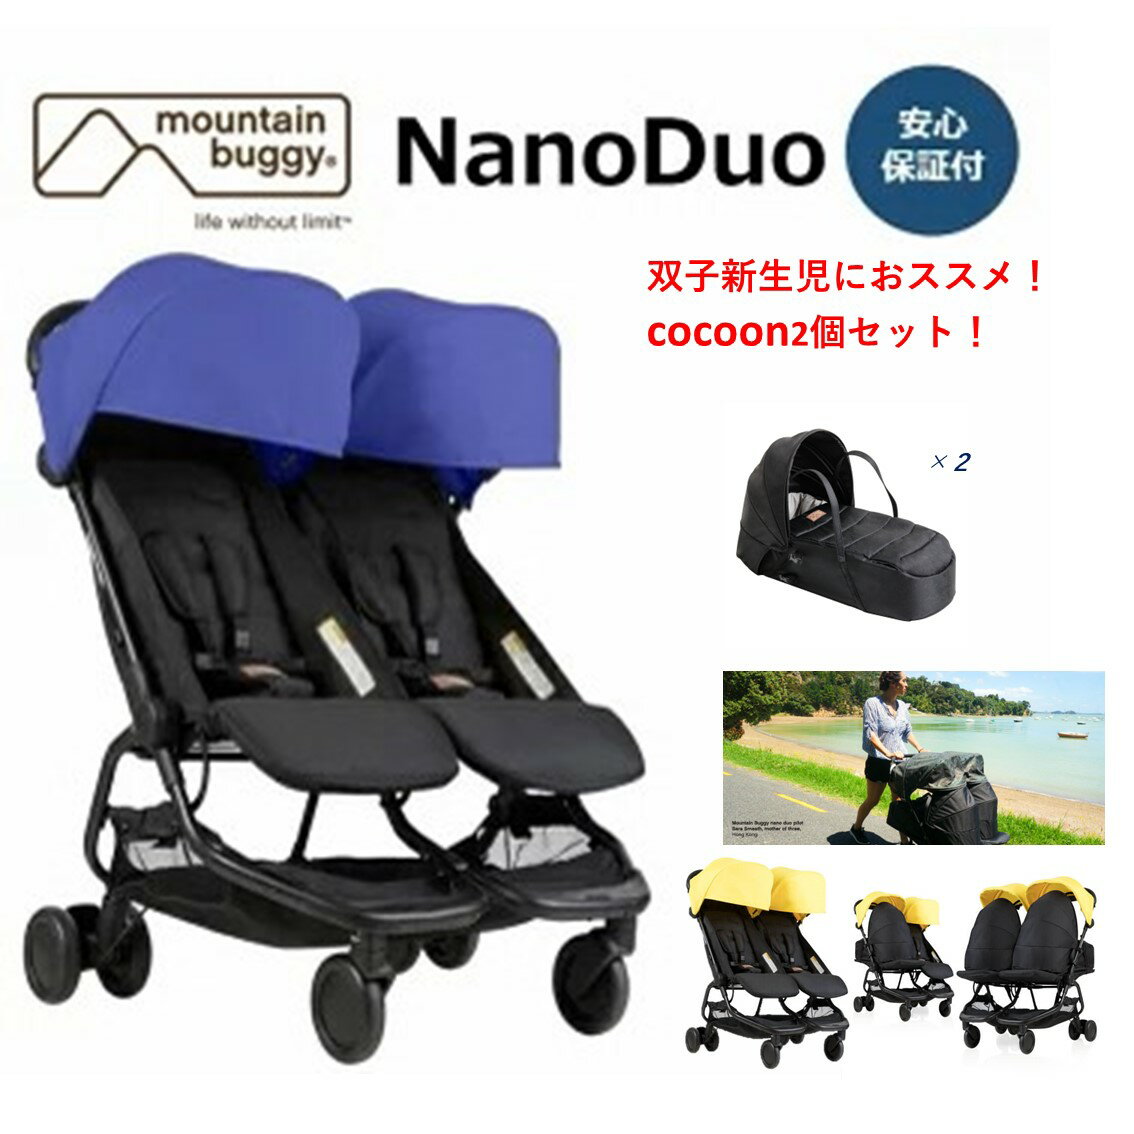 二人乗りベビーカー マウンテンバギー ナノデュオ+cocoon2つセット【5色あり】 mountain buggy　nano duo　cocoon双子新生児 年子